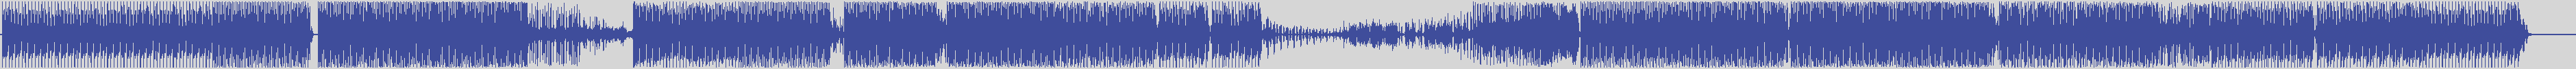 atomic_recordings [AR013] Manu P, Gecky - Dail [Original Mix] audio wave form